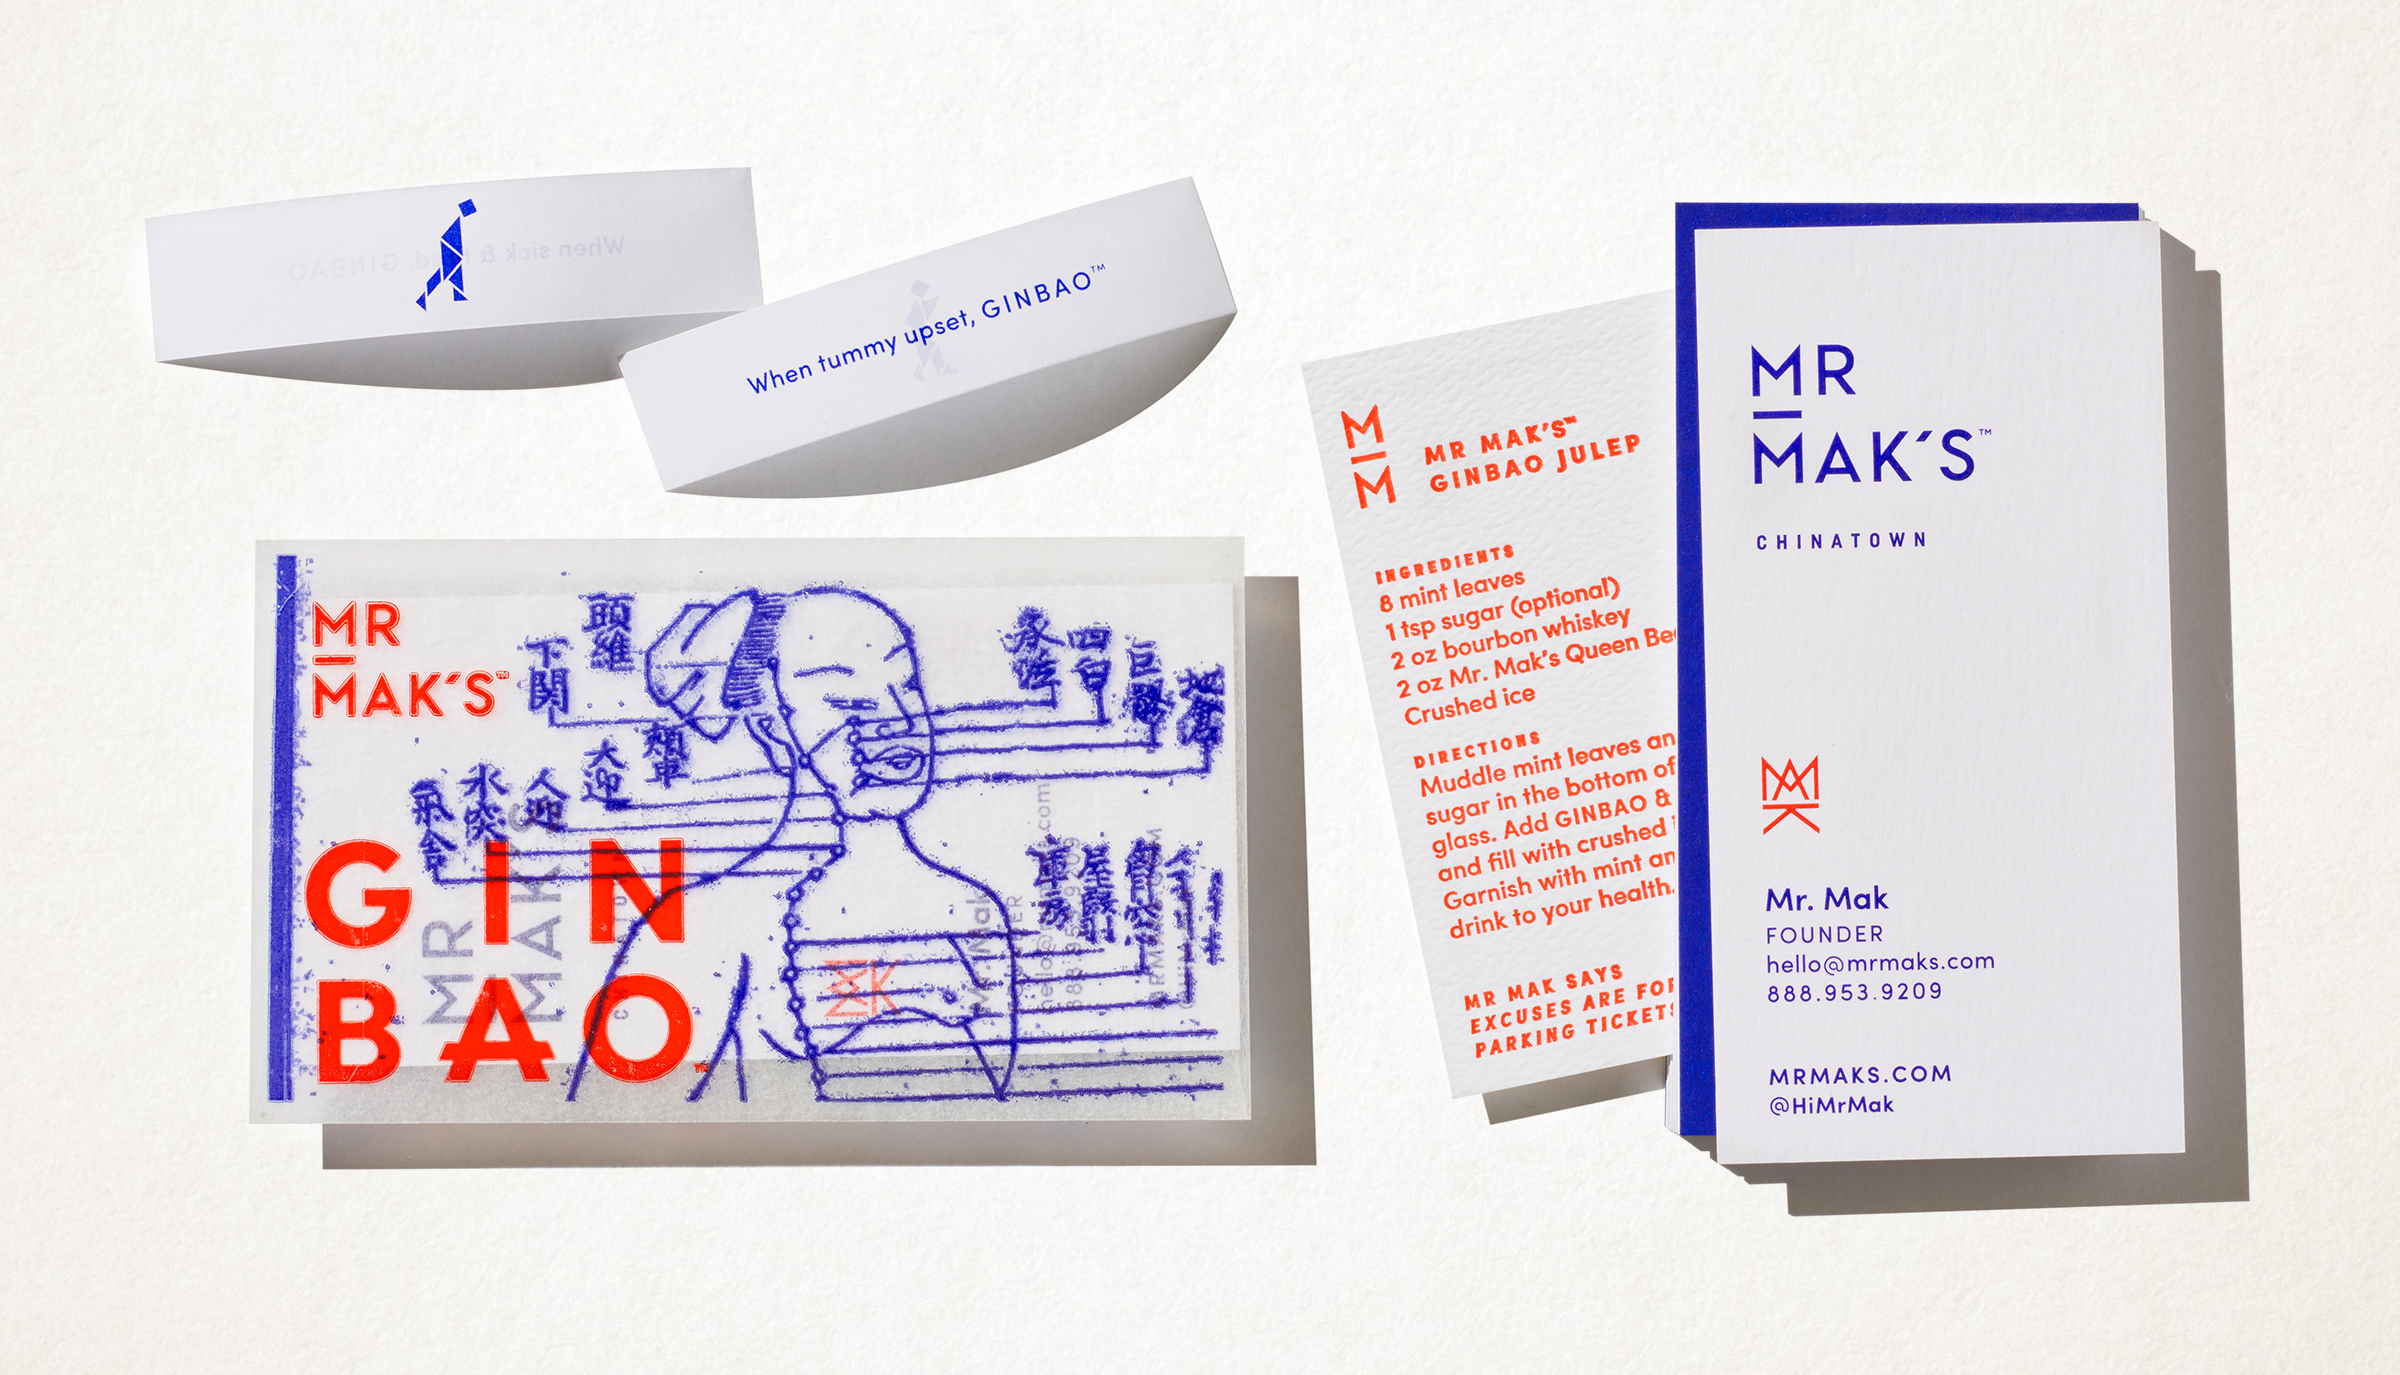 Mr. Mak's brand identity by Werner Design Werks